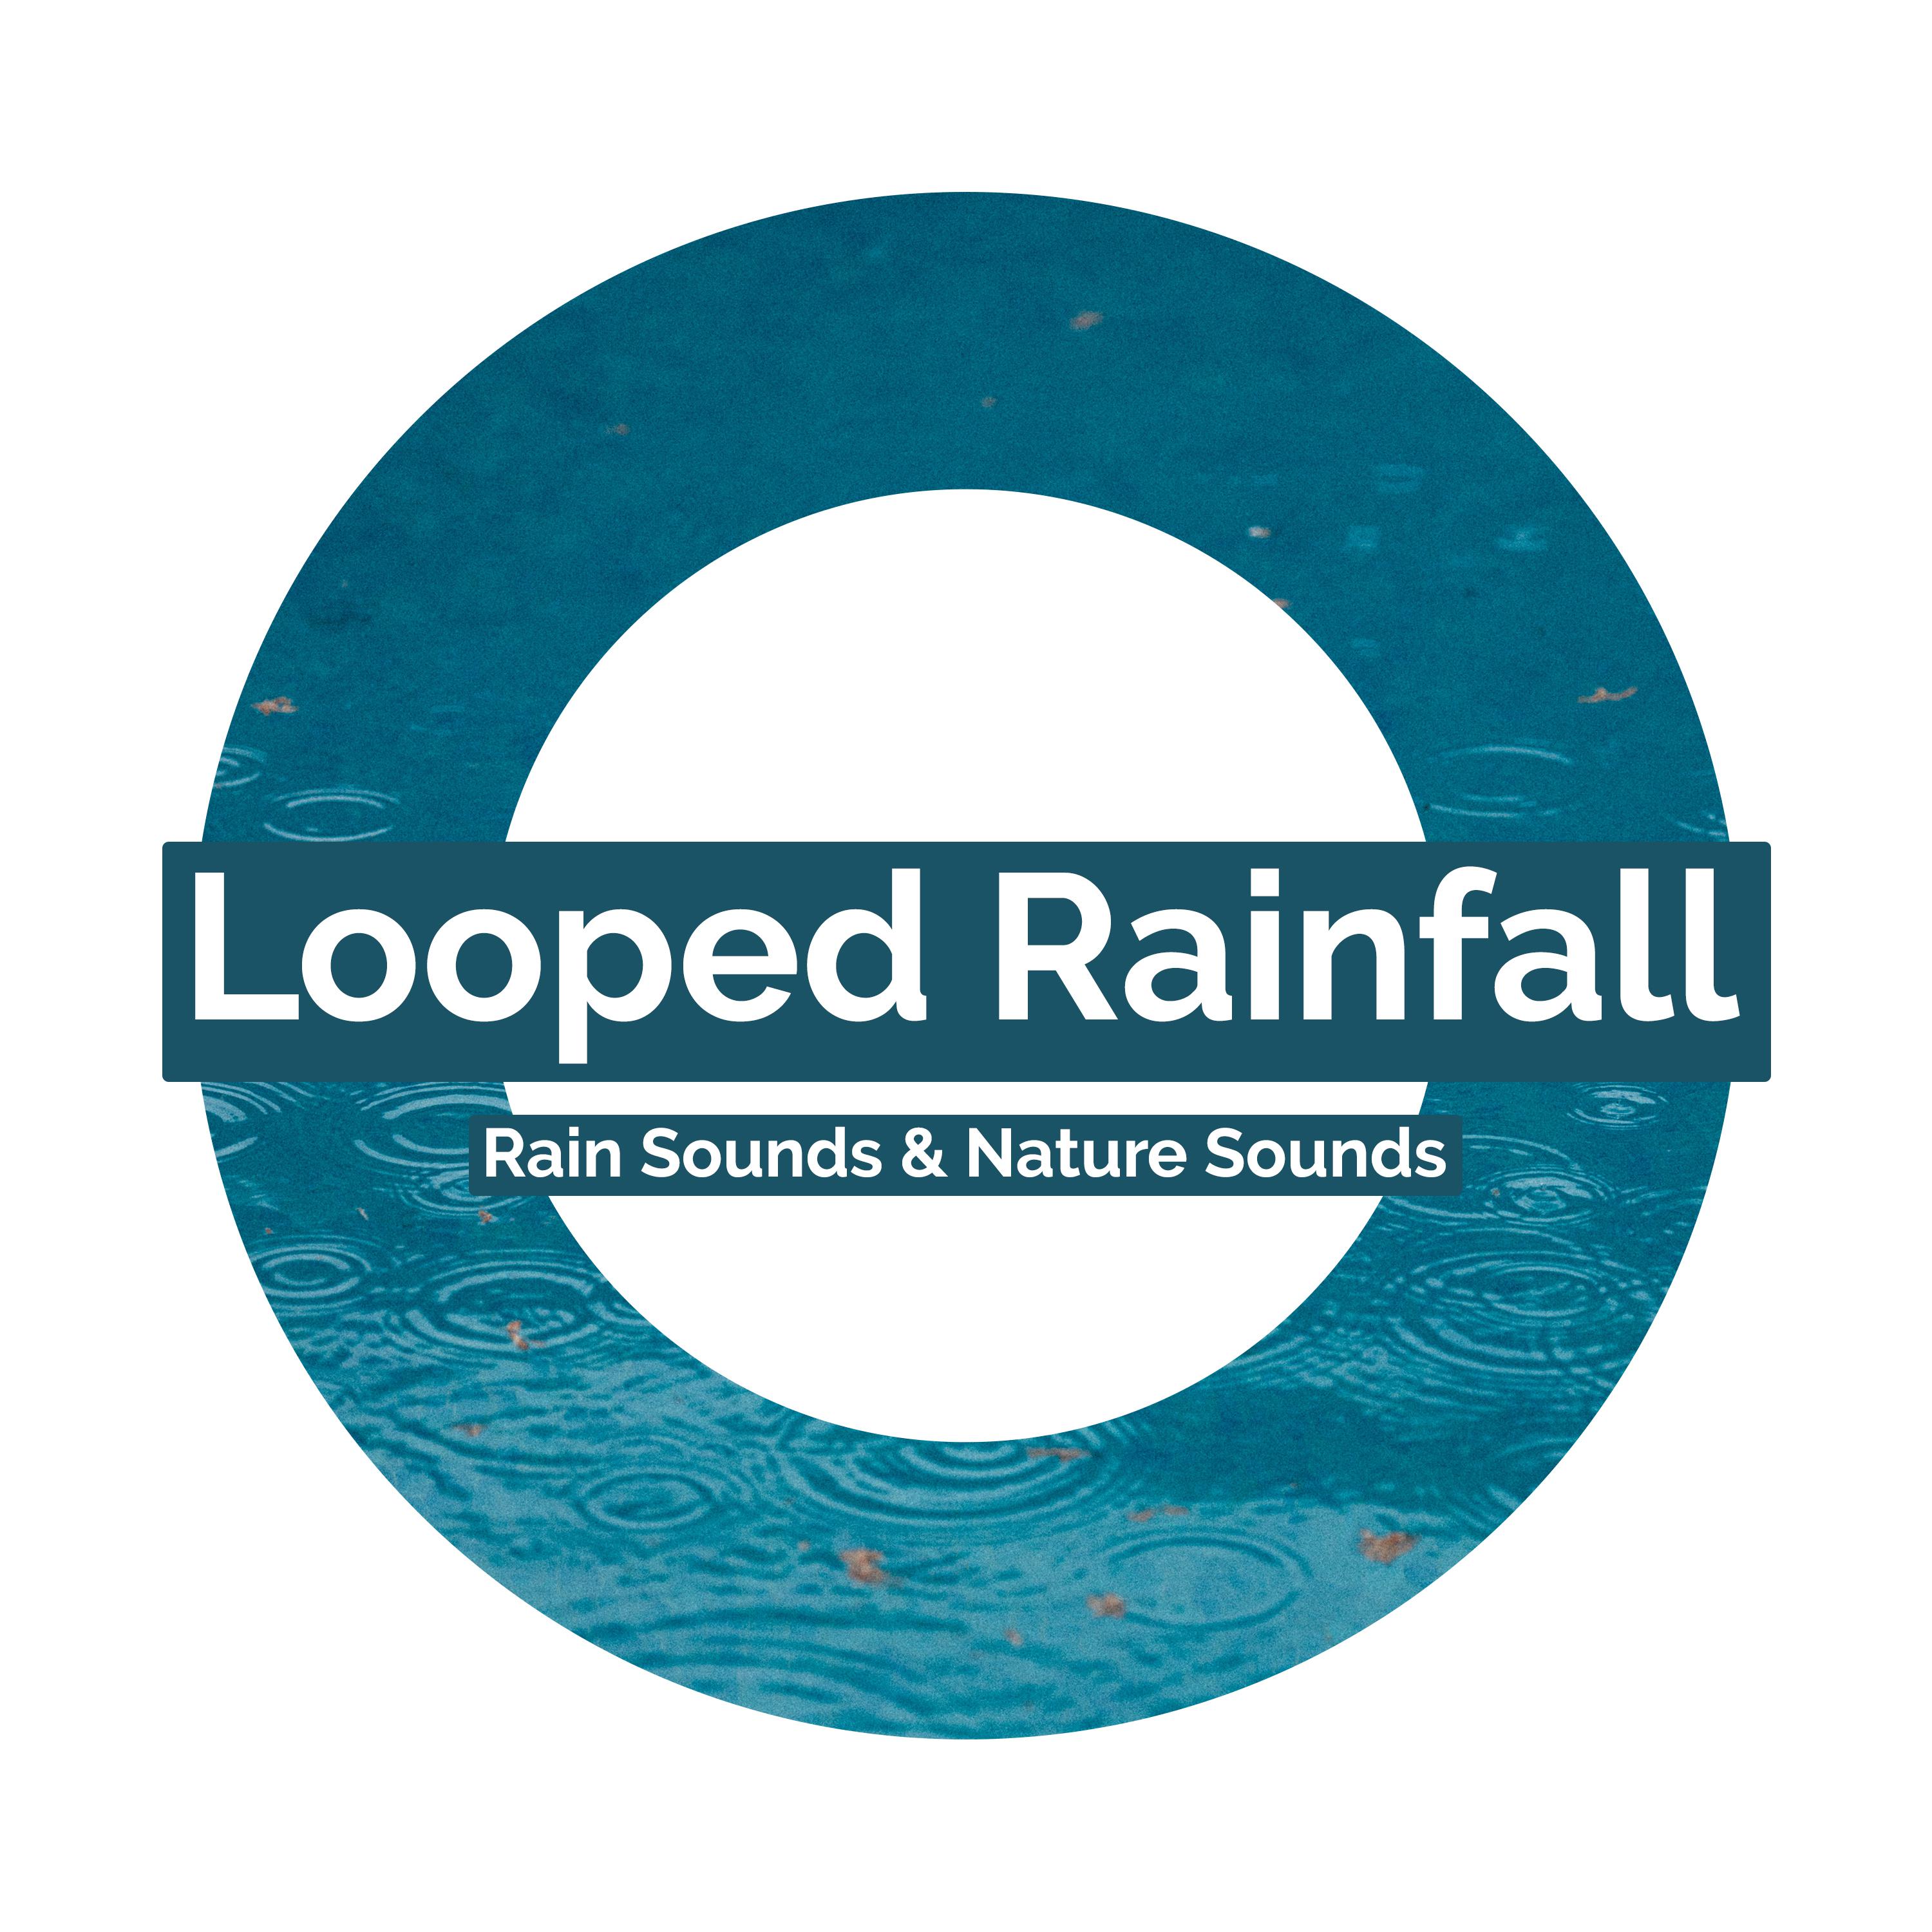 Looped Rainfall